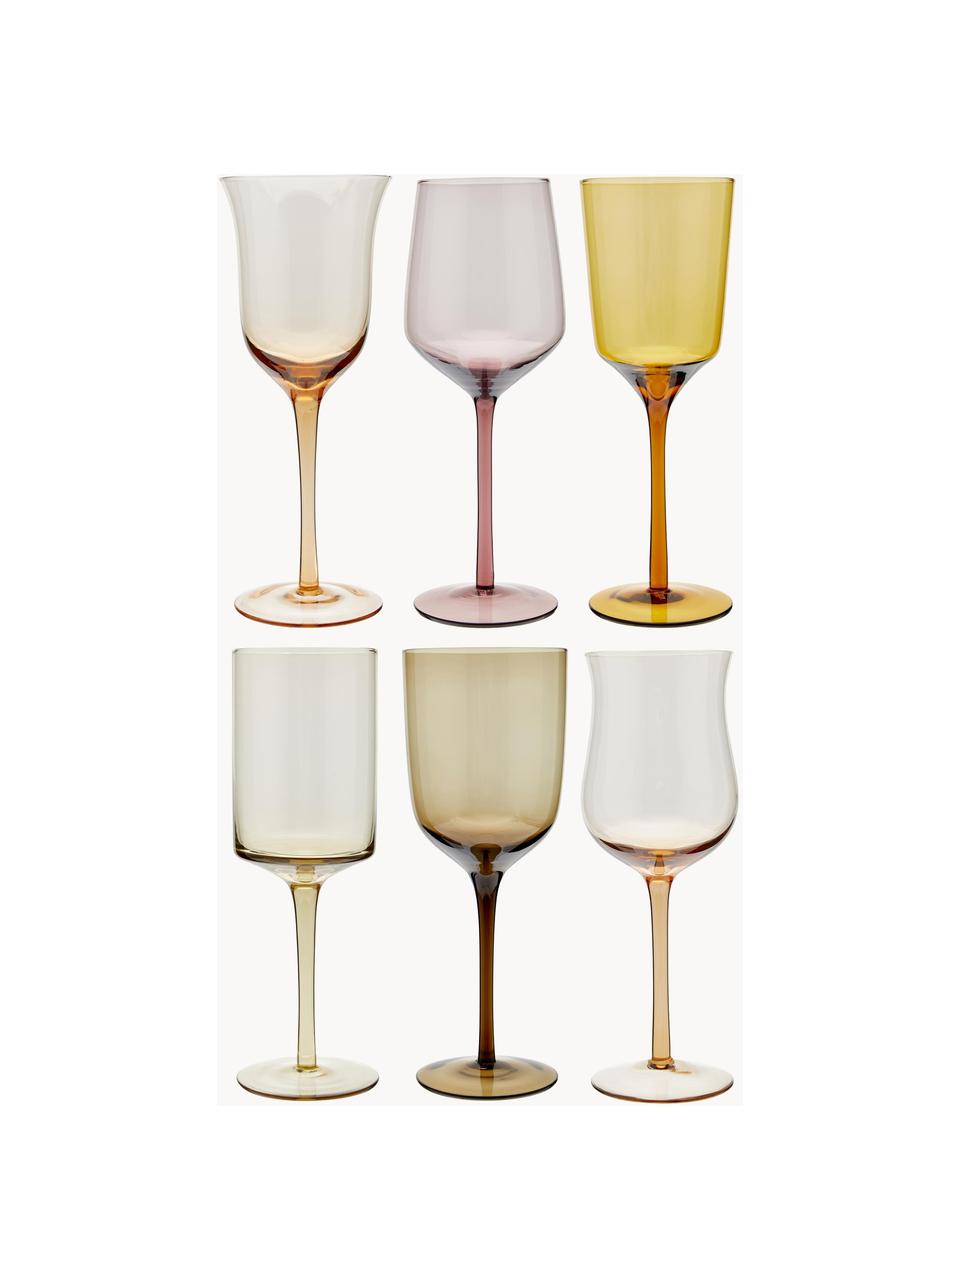 Sada ručně foukaných sklenic na víno v různých barvách a tvarech Diseguale, 6 dílů, Foukané sklo, Odstíny žluté, odstíny hnědé, Ø 7 cm, V 24 cm, 250 ml